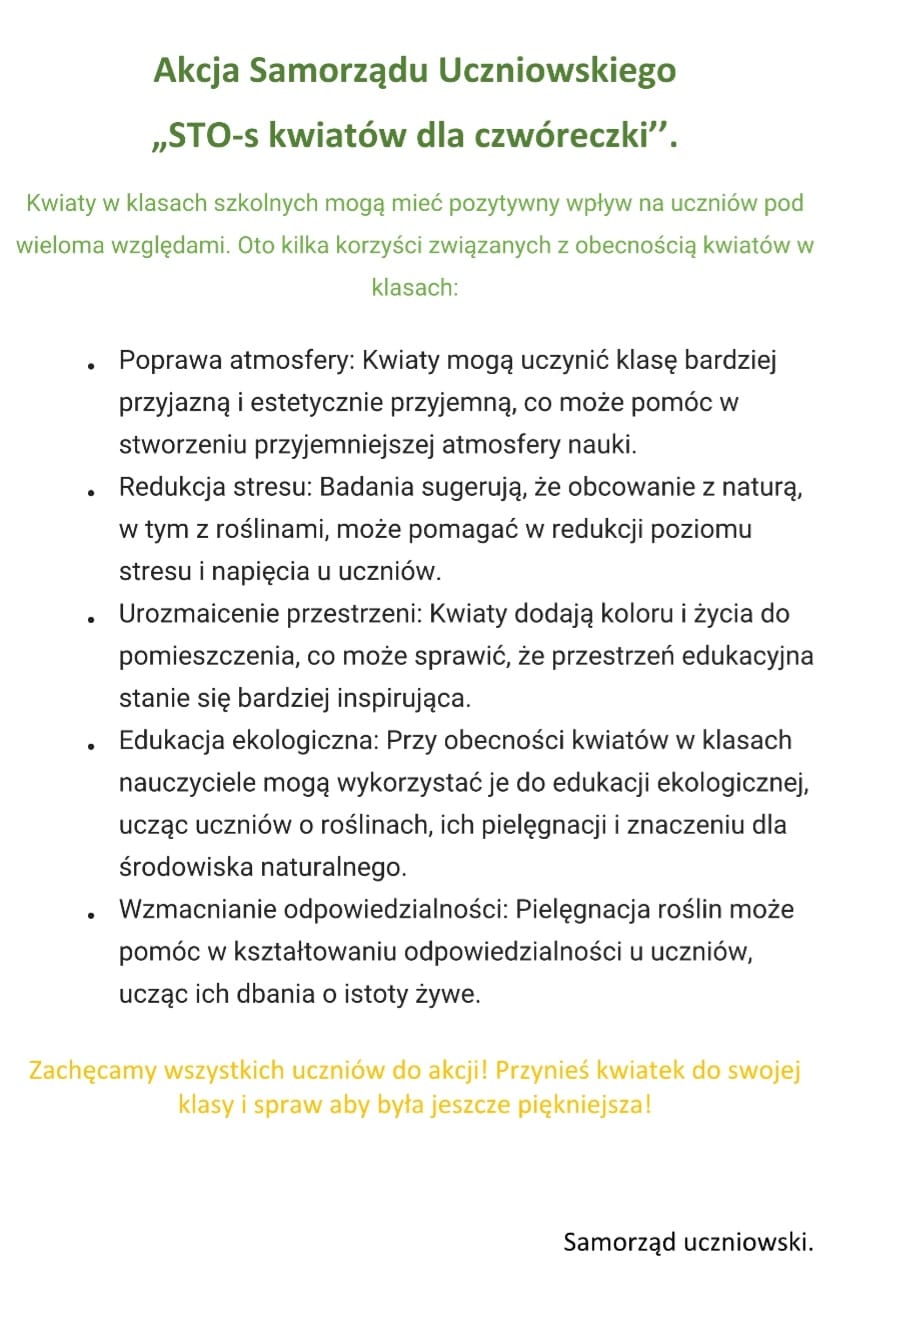 Grafika przedstawia założenia akcji Samorządu Uczniowskiego